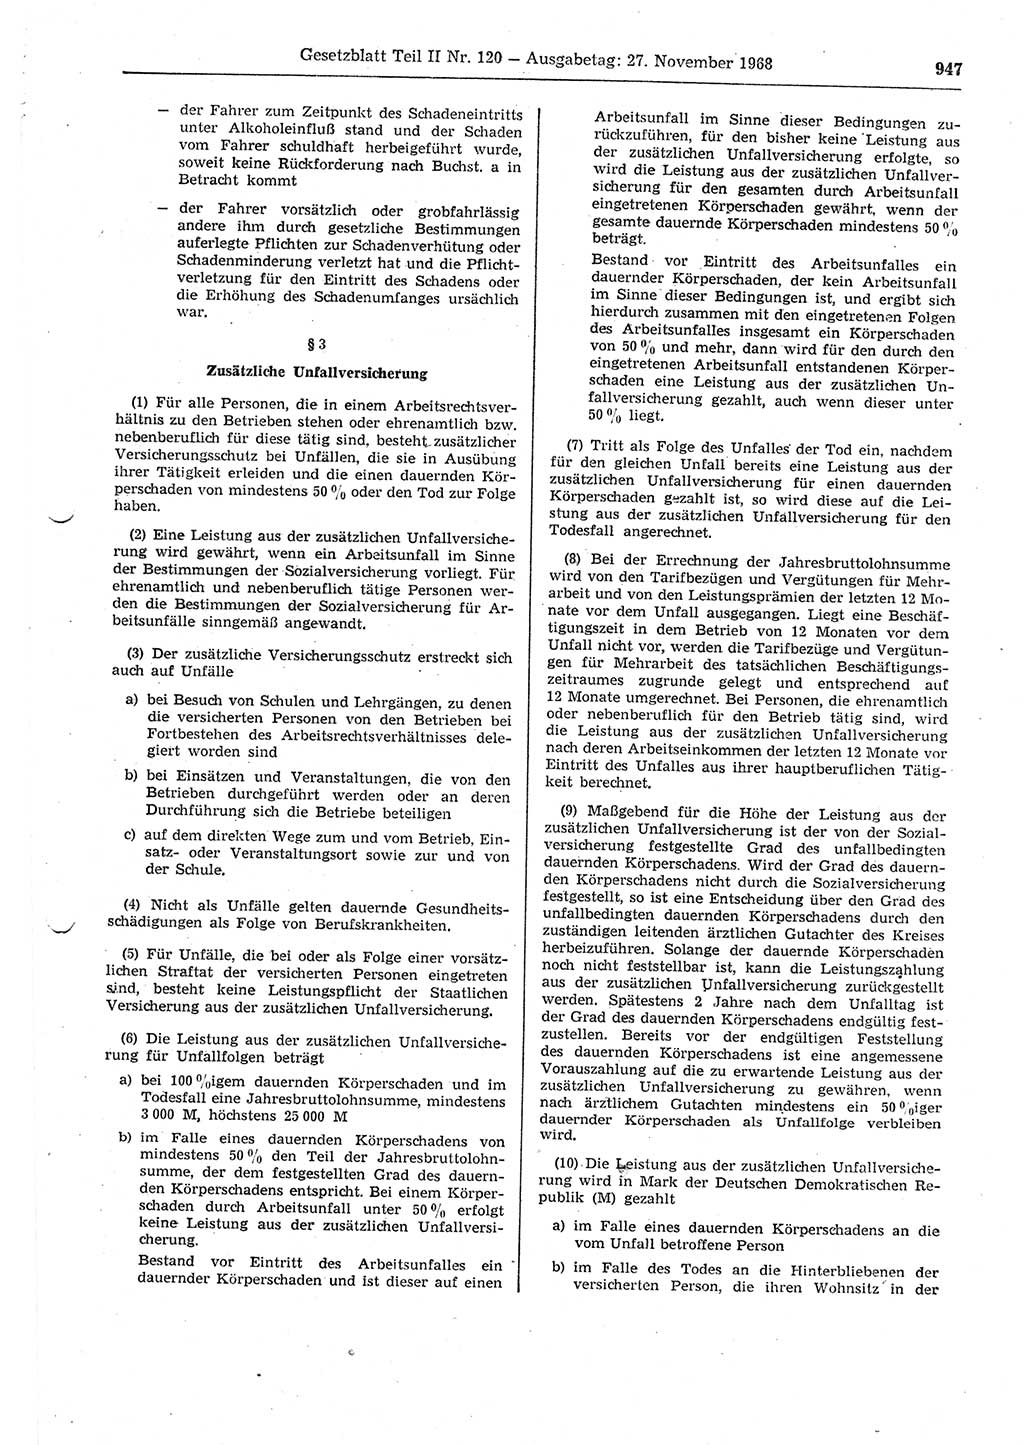 Gesetzblatt (GBl.) der Deutschen Demokratischen Republik (DDR) Teil ⅠⅠ 1968, Seite 947 (GBl. DDR ⅠⅠ 1968, S. 947)